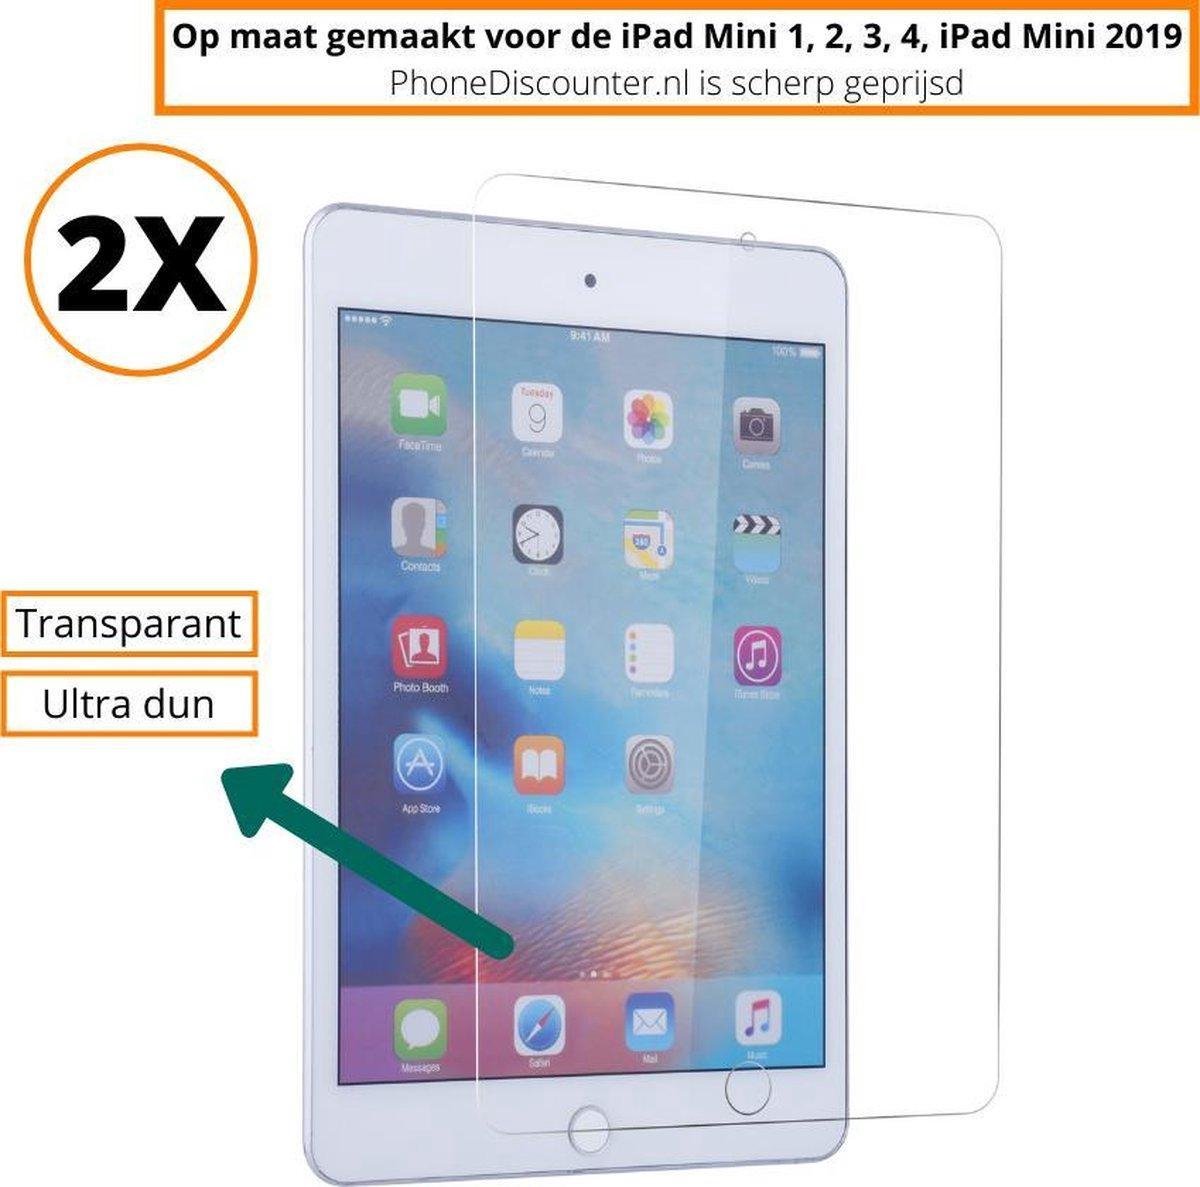 ipad mini 1 tempered glass | iPad Mini 1 full screenprotector 2x | iPad Mini 1 tempered glass screen protector | 2x screenprotector ipad mini 1 apple | Apple iPad Mini 1 glasplaat